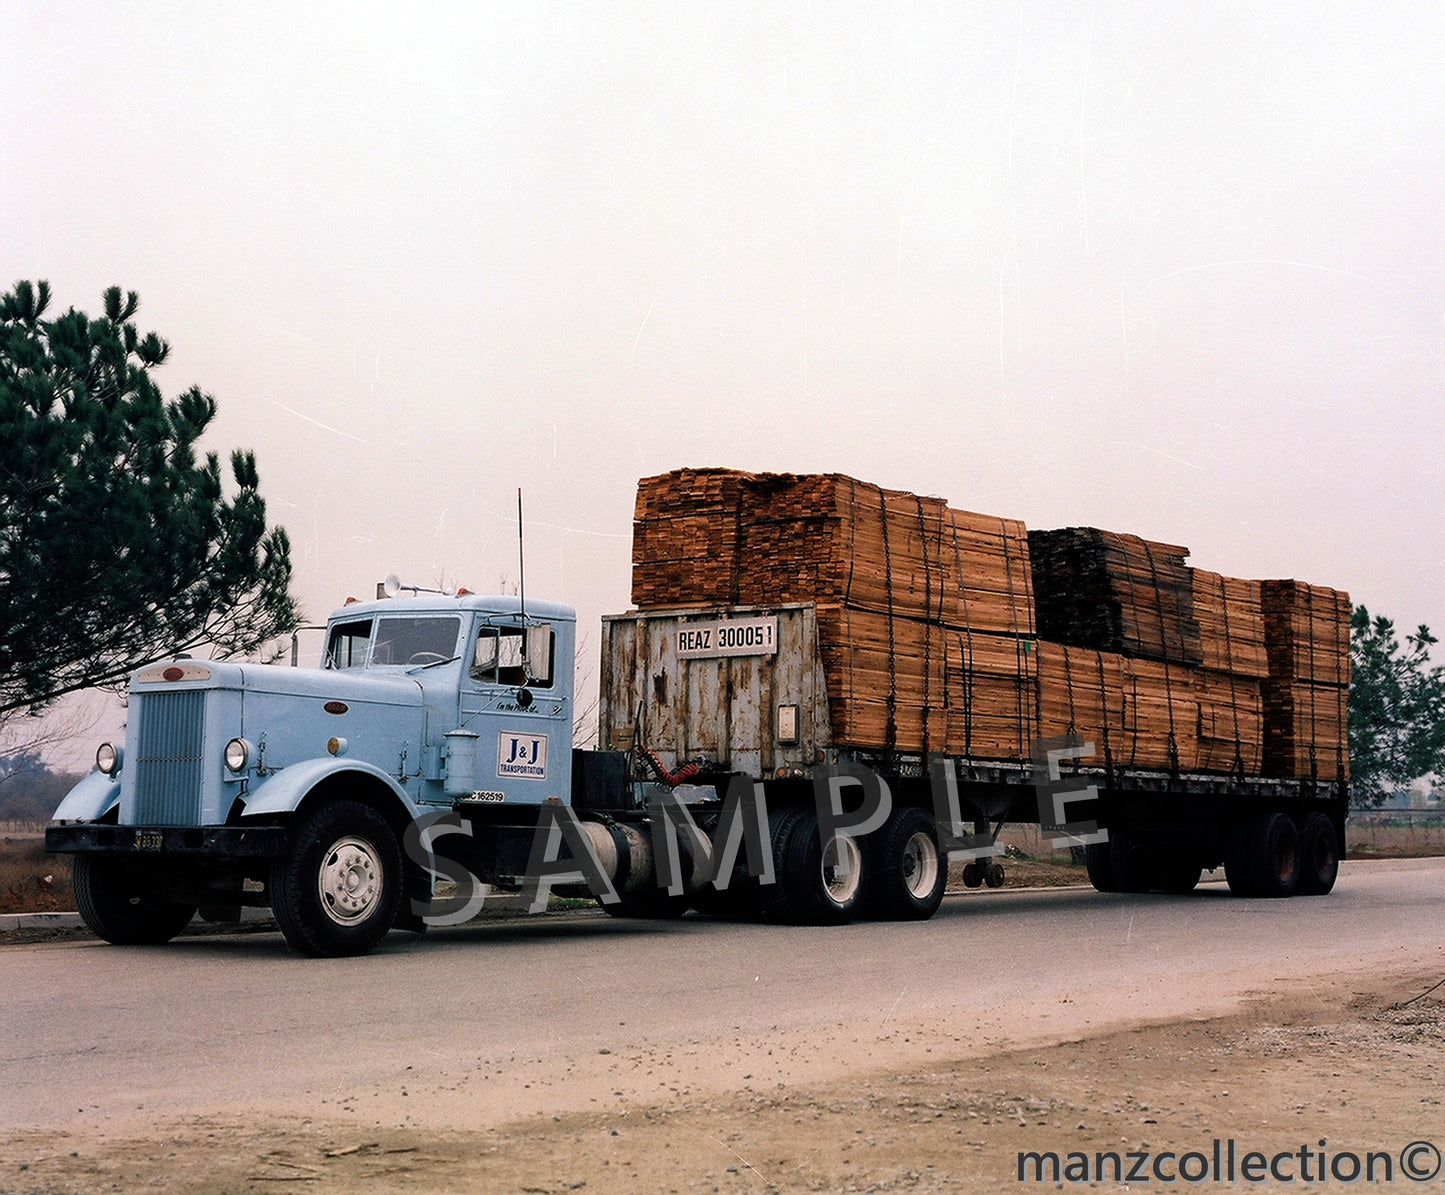 8x10 color semi-truck photo '50's Peterbilt J & J TRANSPORTATION - Transportation Treasure